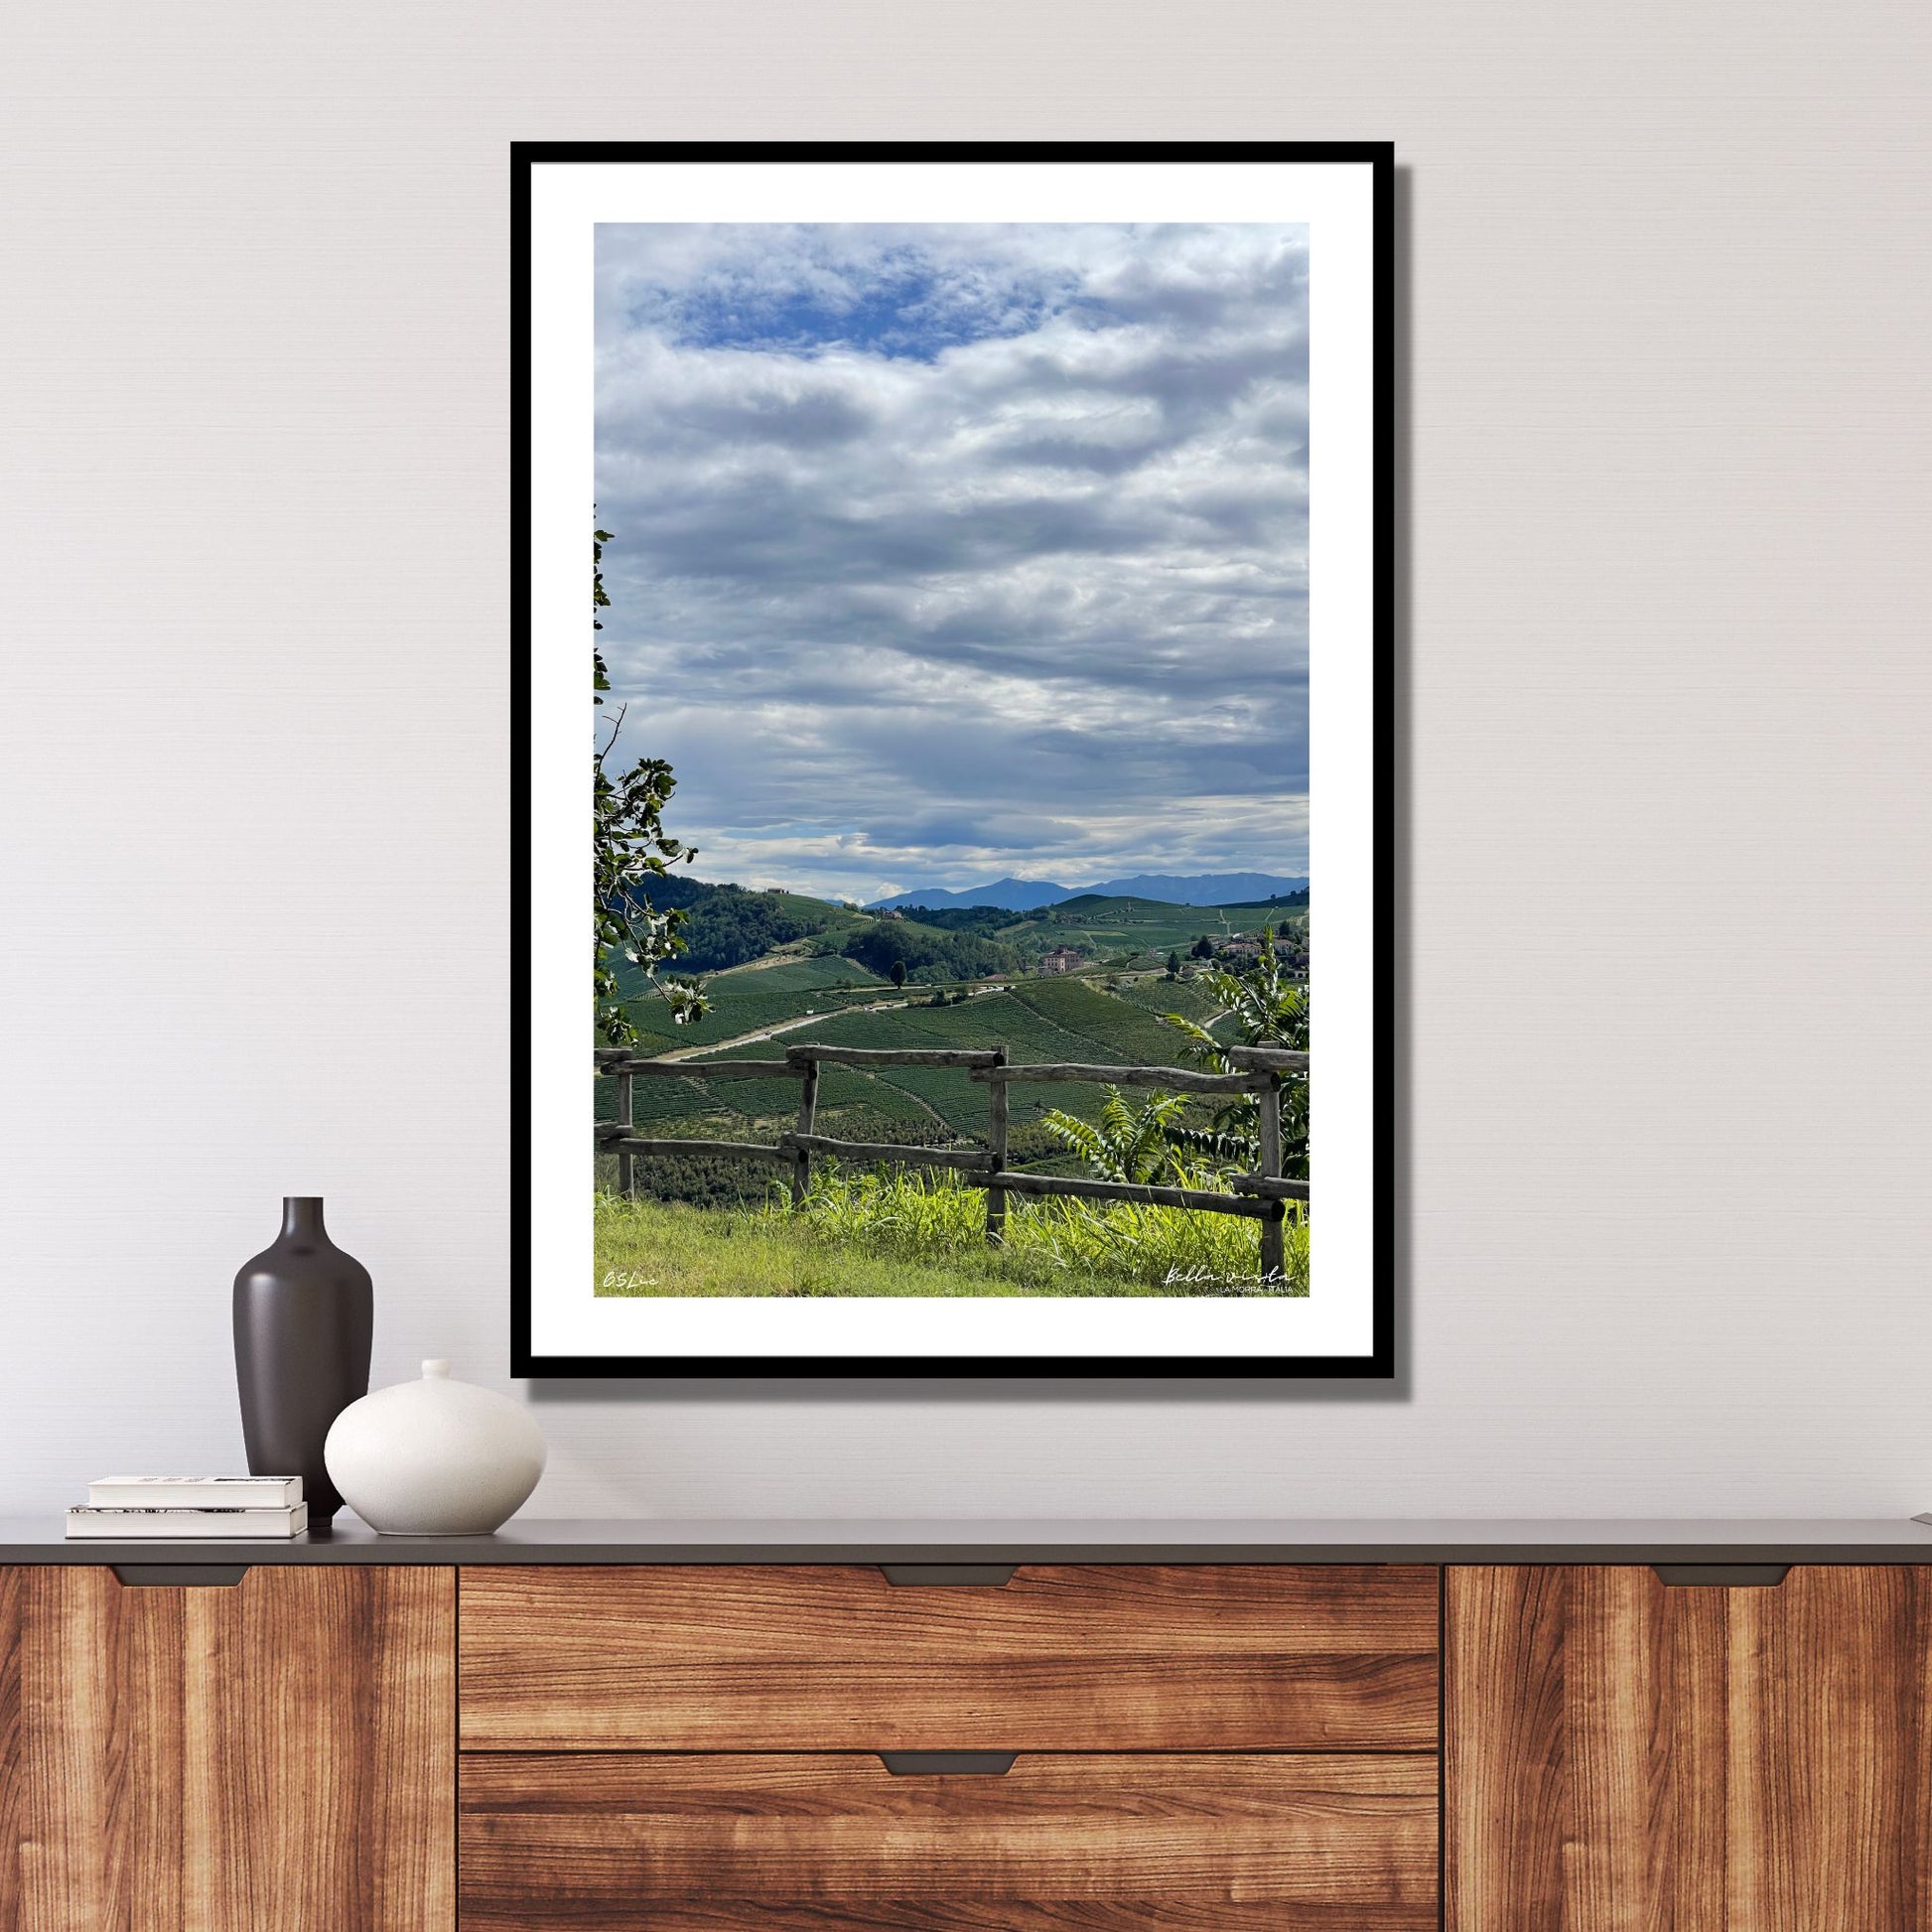 Utsikt mot Barolo fra vinmarker i La Morra området. Alpene kan skimtes i det fjerne. I forkant er det et tre gjerde. Det er et tett skylag på himmelen med en liten åpning hvor det skimtes blå himmel.